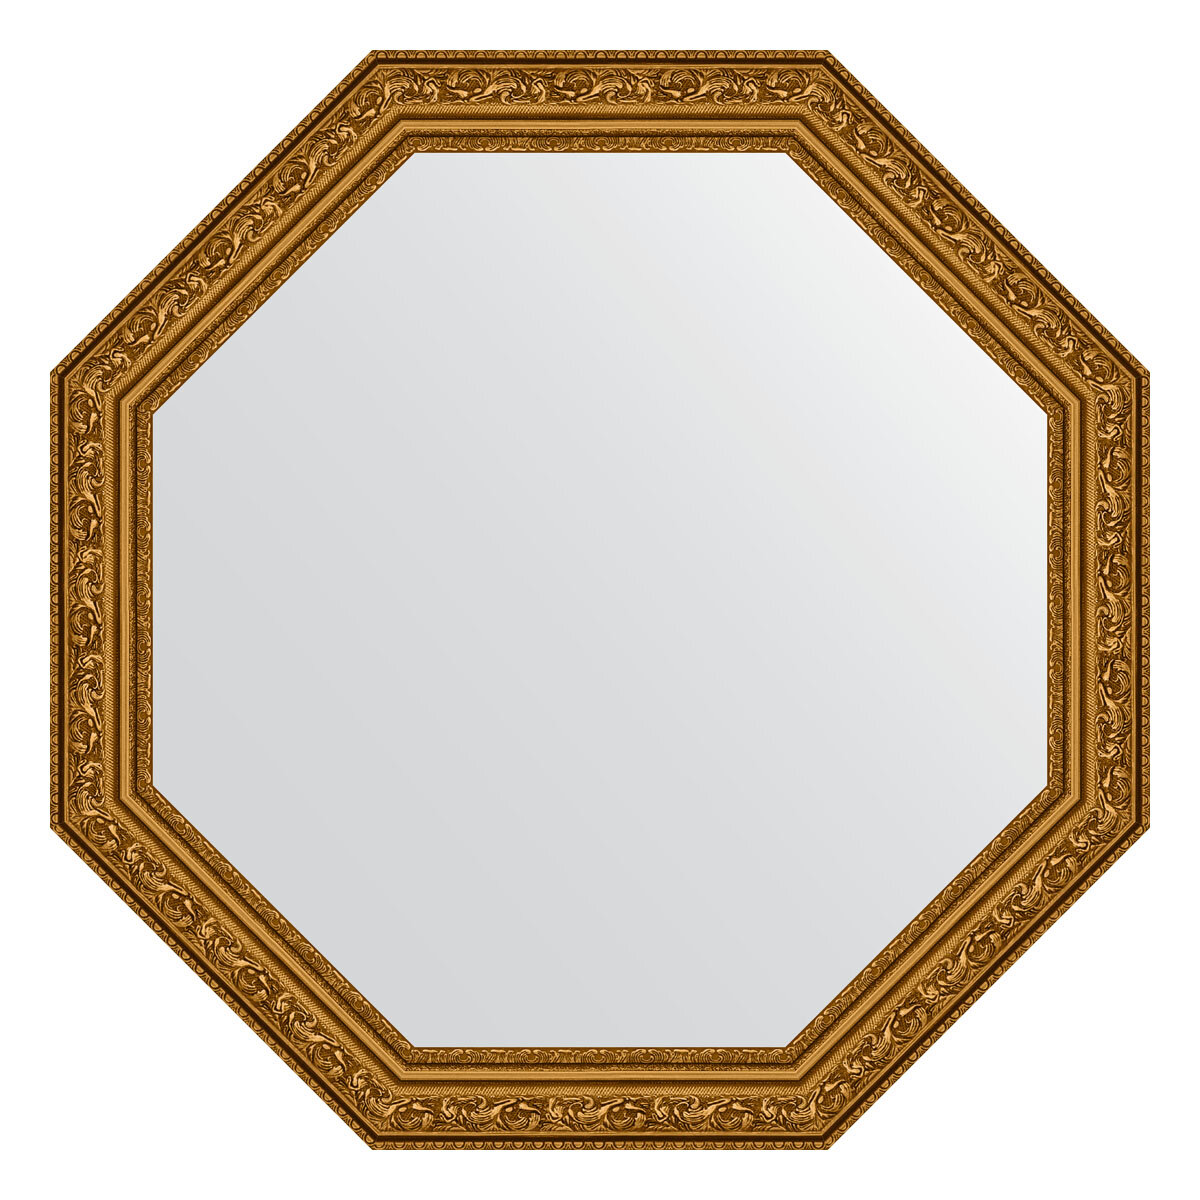 Зеркало настенное Octagon EVOFORM в багетной раме виньетка состаренное золото, 60,4х60,4 см, для гостиной, прихожей и ванной комнаты, BY 3689